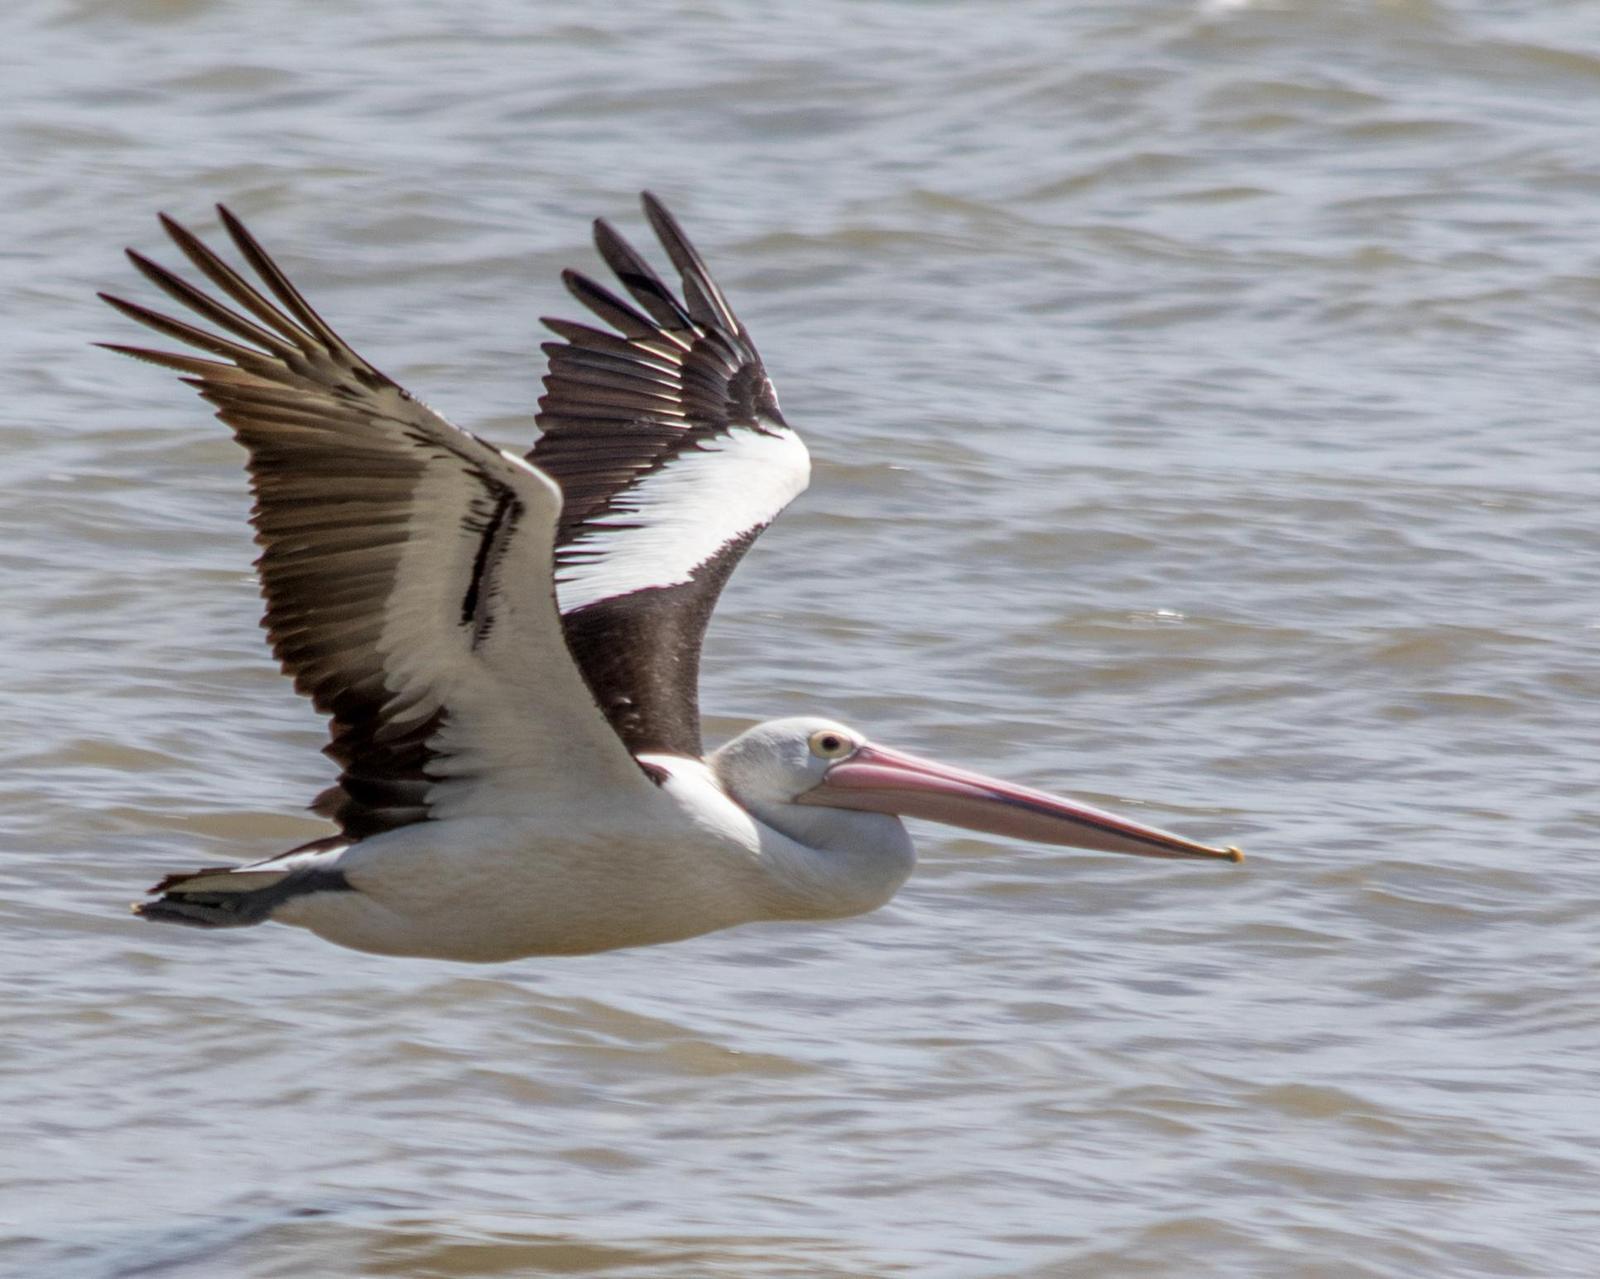 Australian Pelican Photo by Mark Baldwin